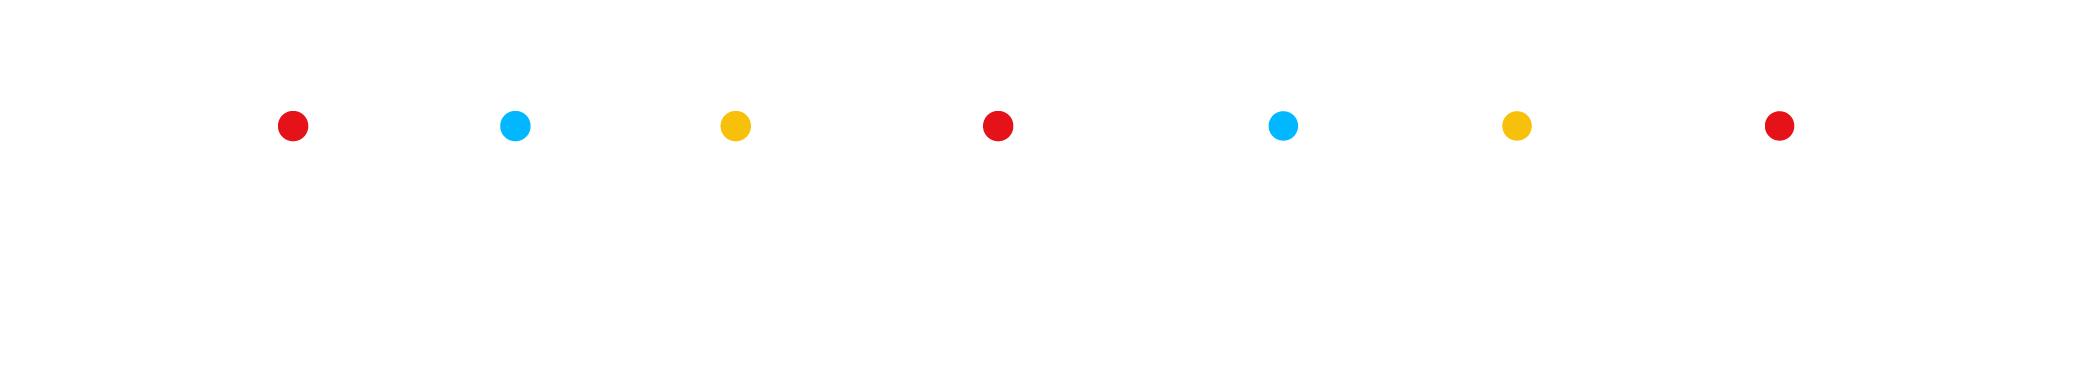 Founders Meetup full logo in caps